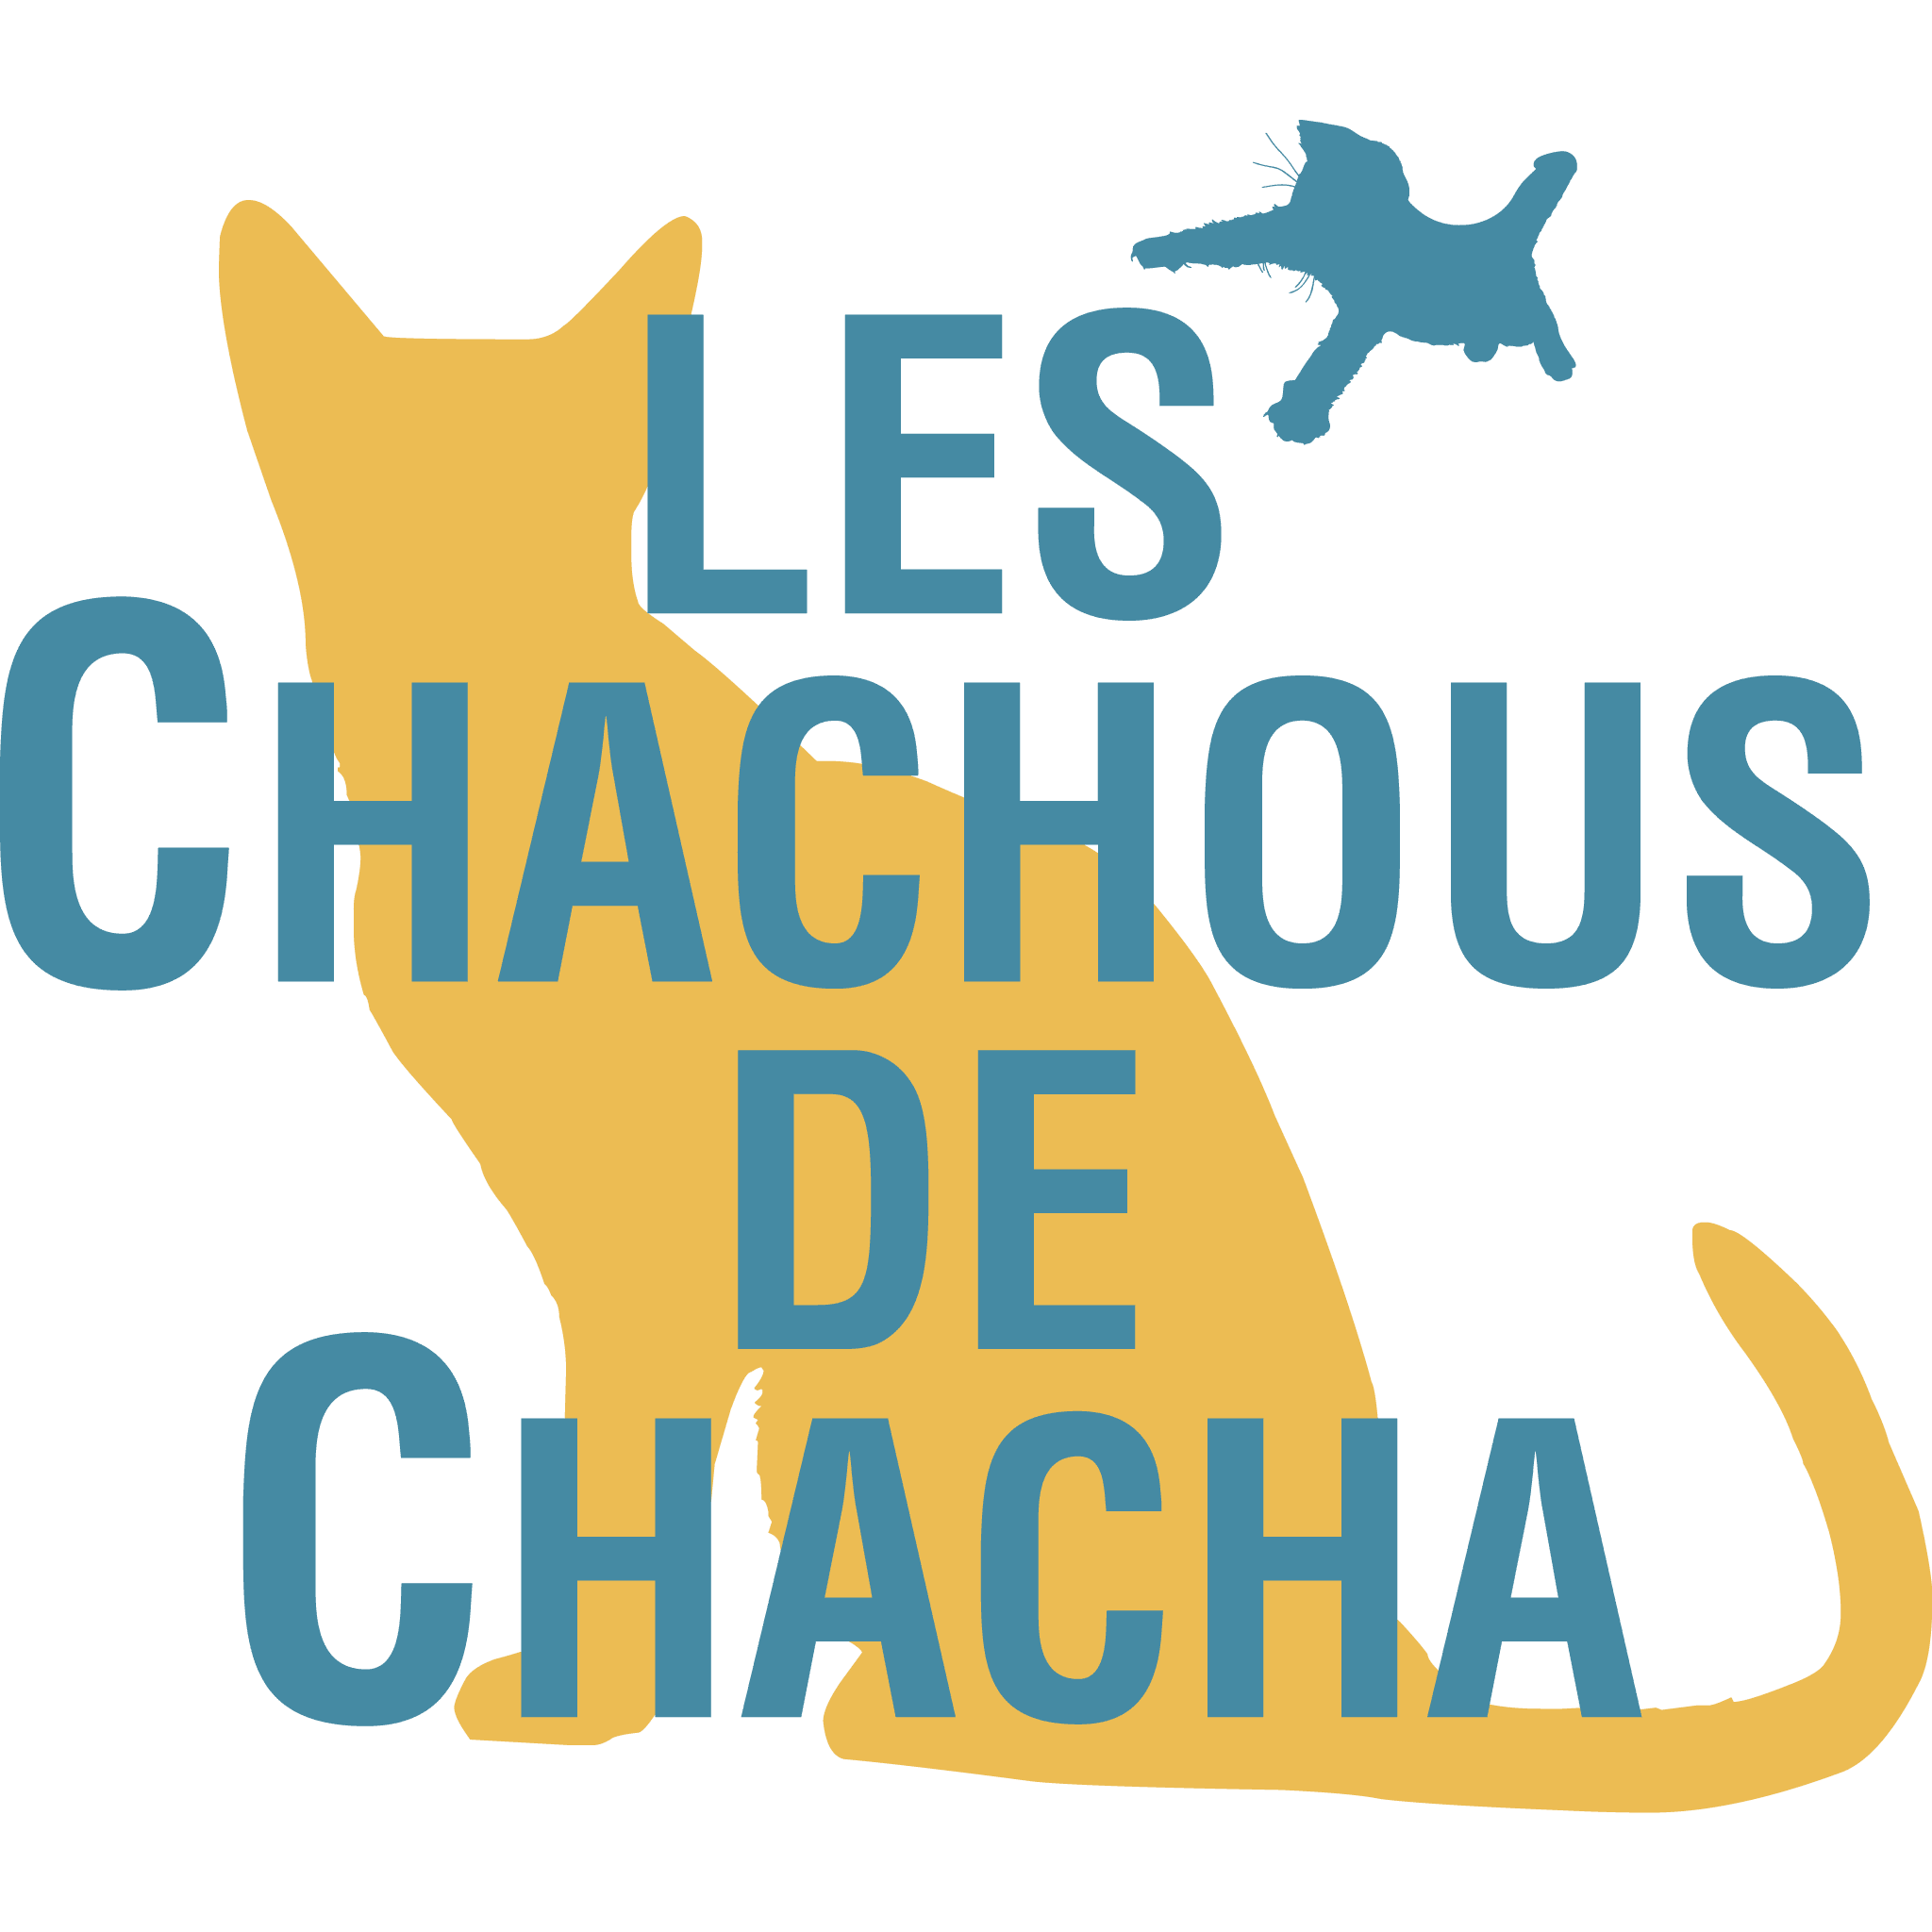 Association de protection des chats du Val d Oise - Les Chachous de Chacha Logo